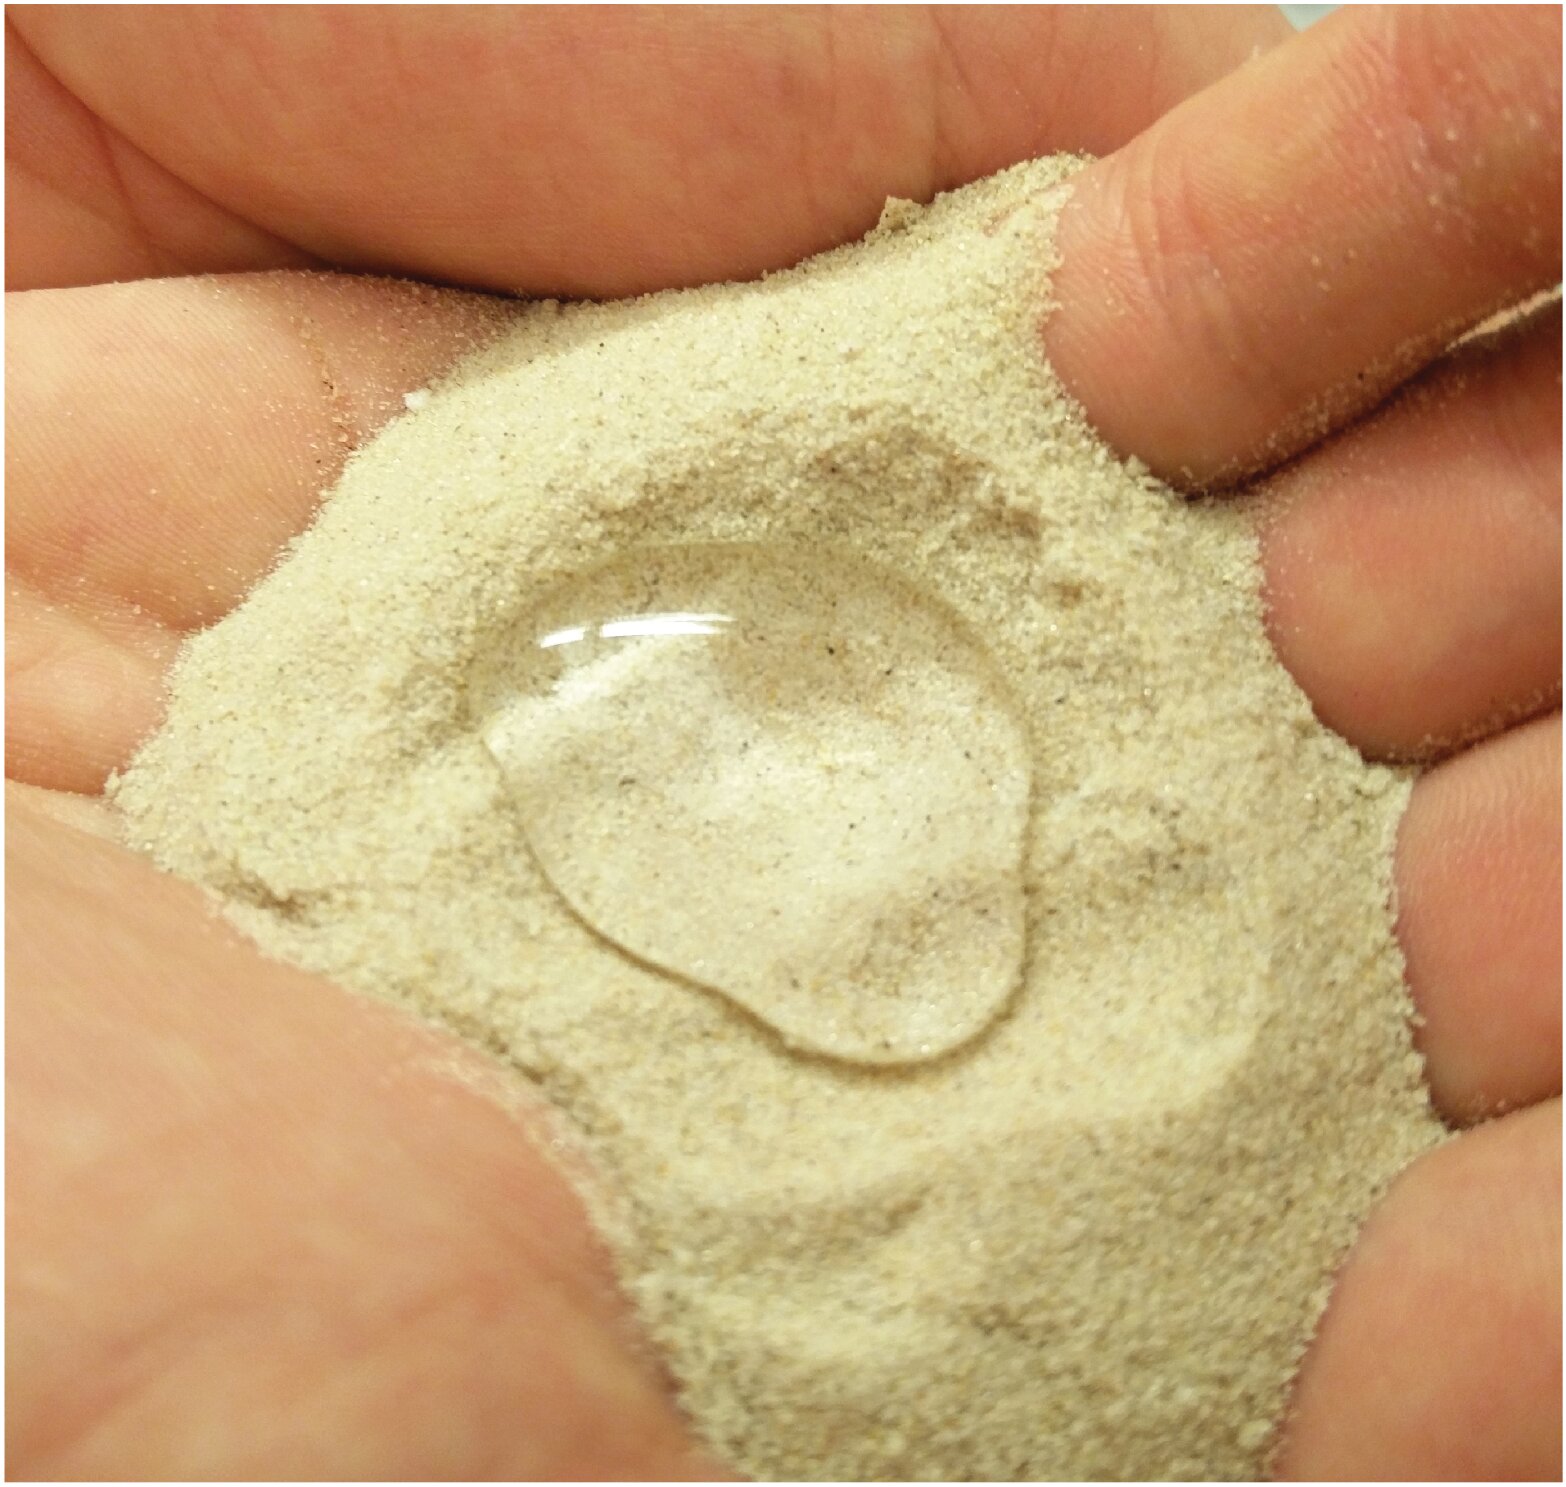 Wax-coated sand keeps soil wet longer, improves crop yields in arid regions